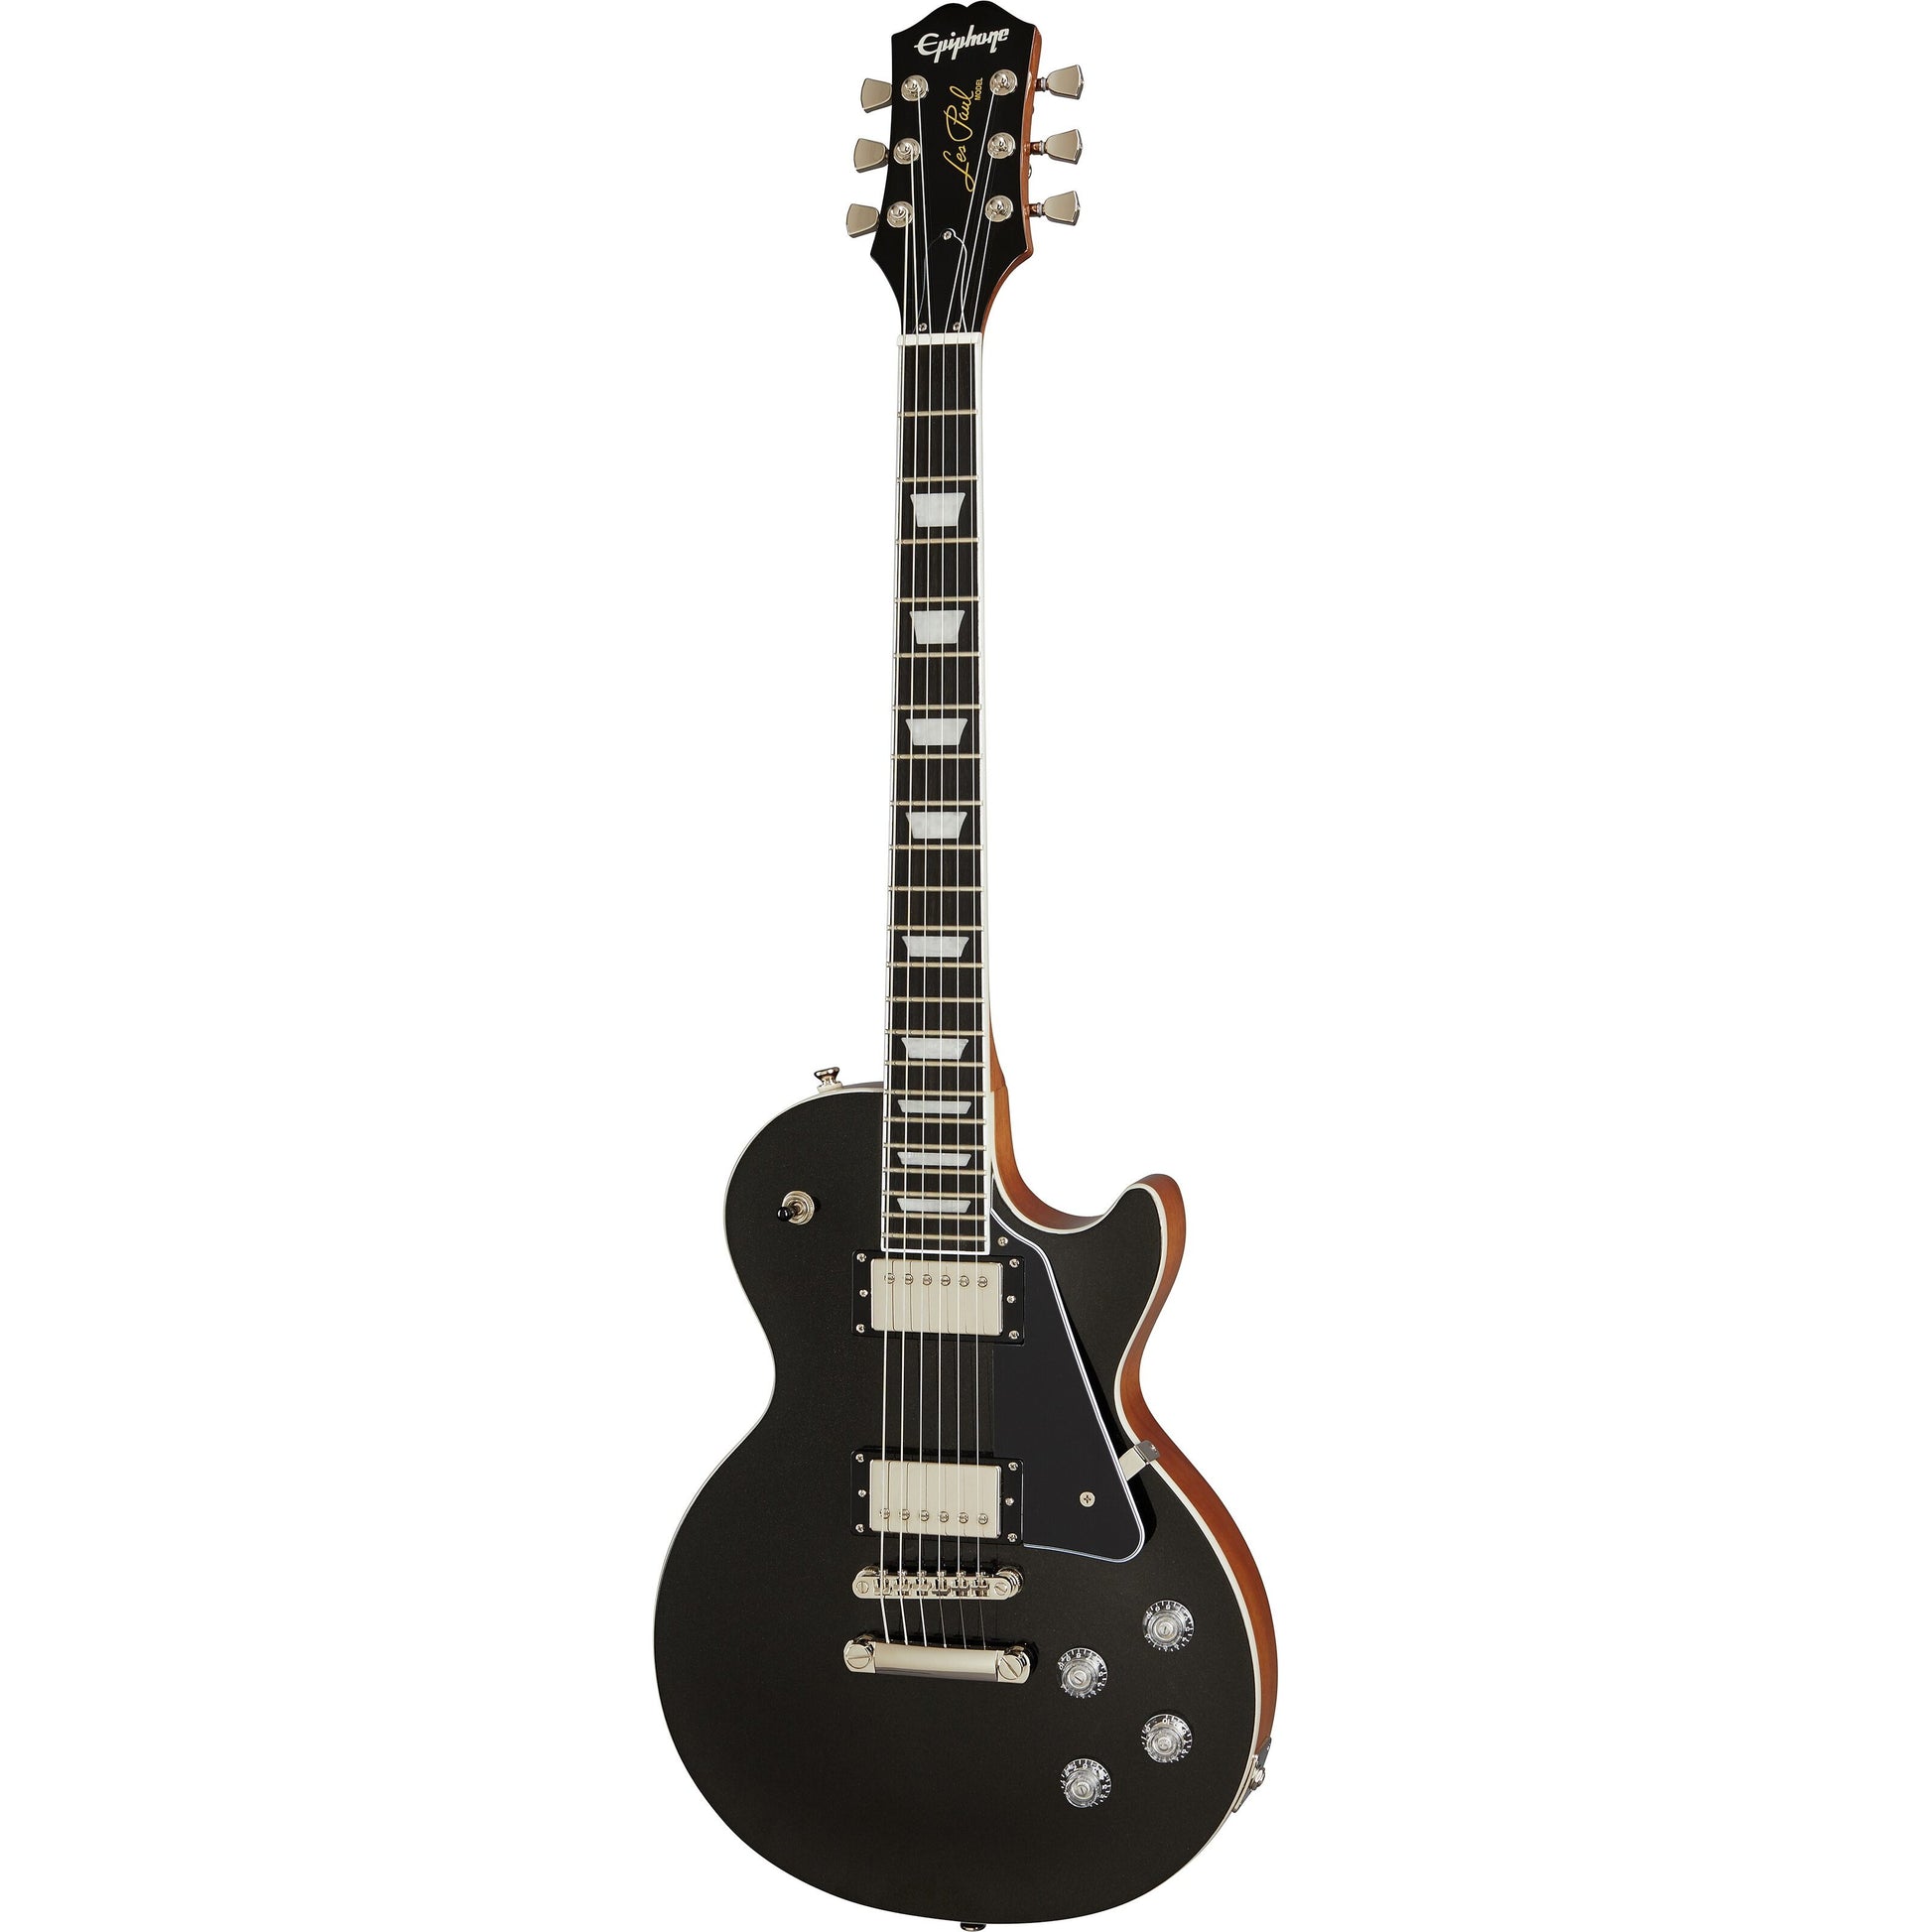 Epiphone Les Paul Modern Electric Guitar, Graphite Black Full Guitar